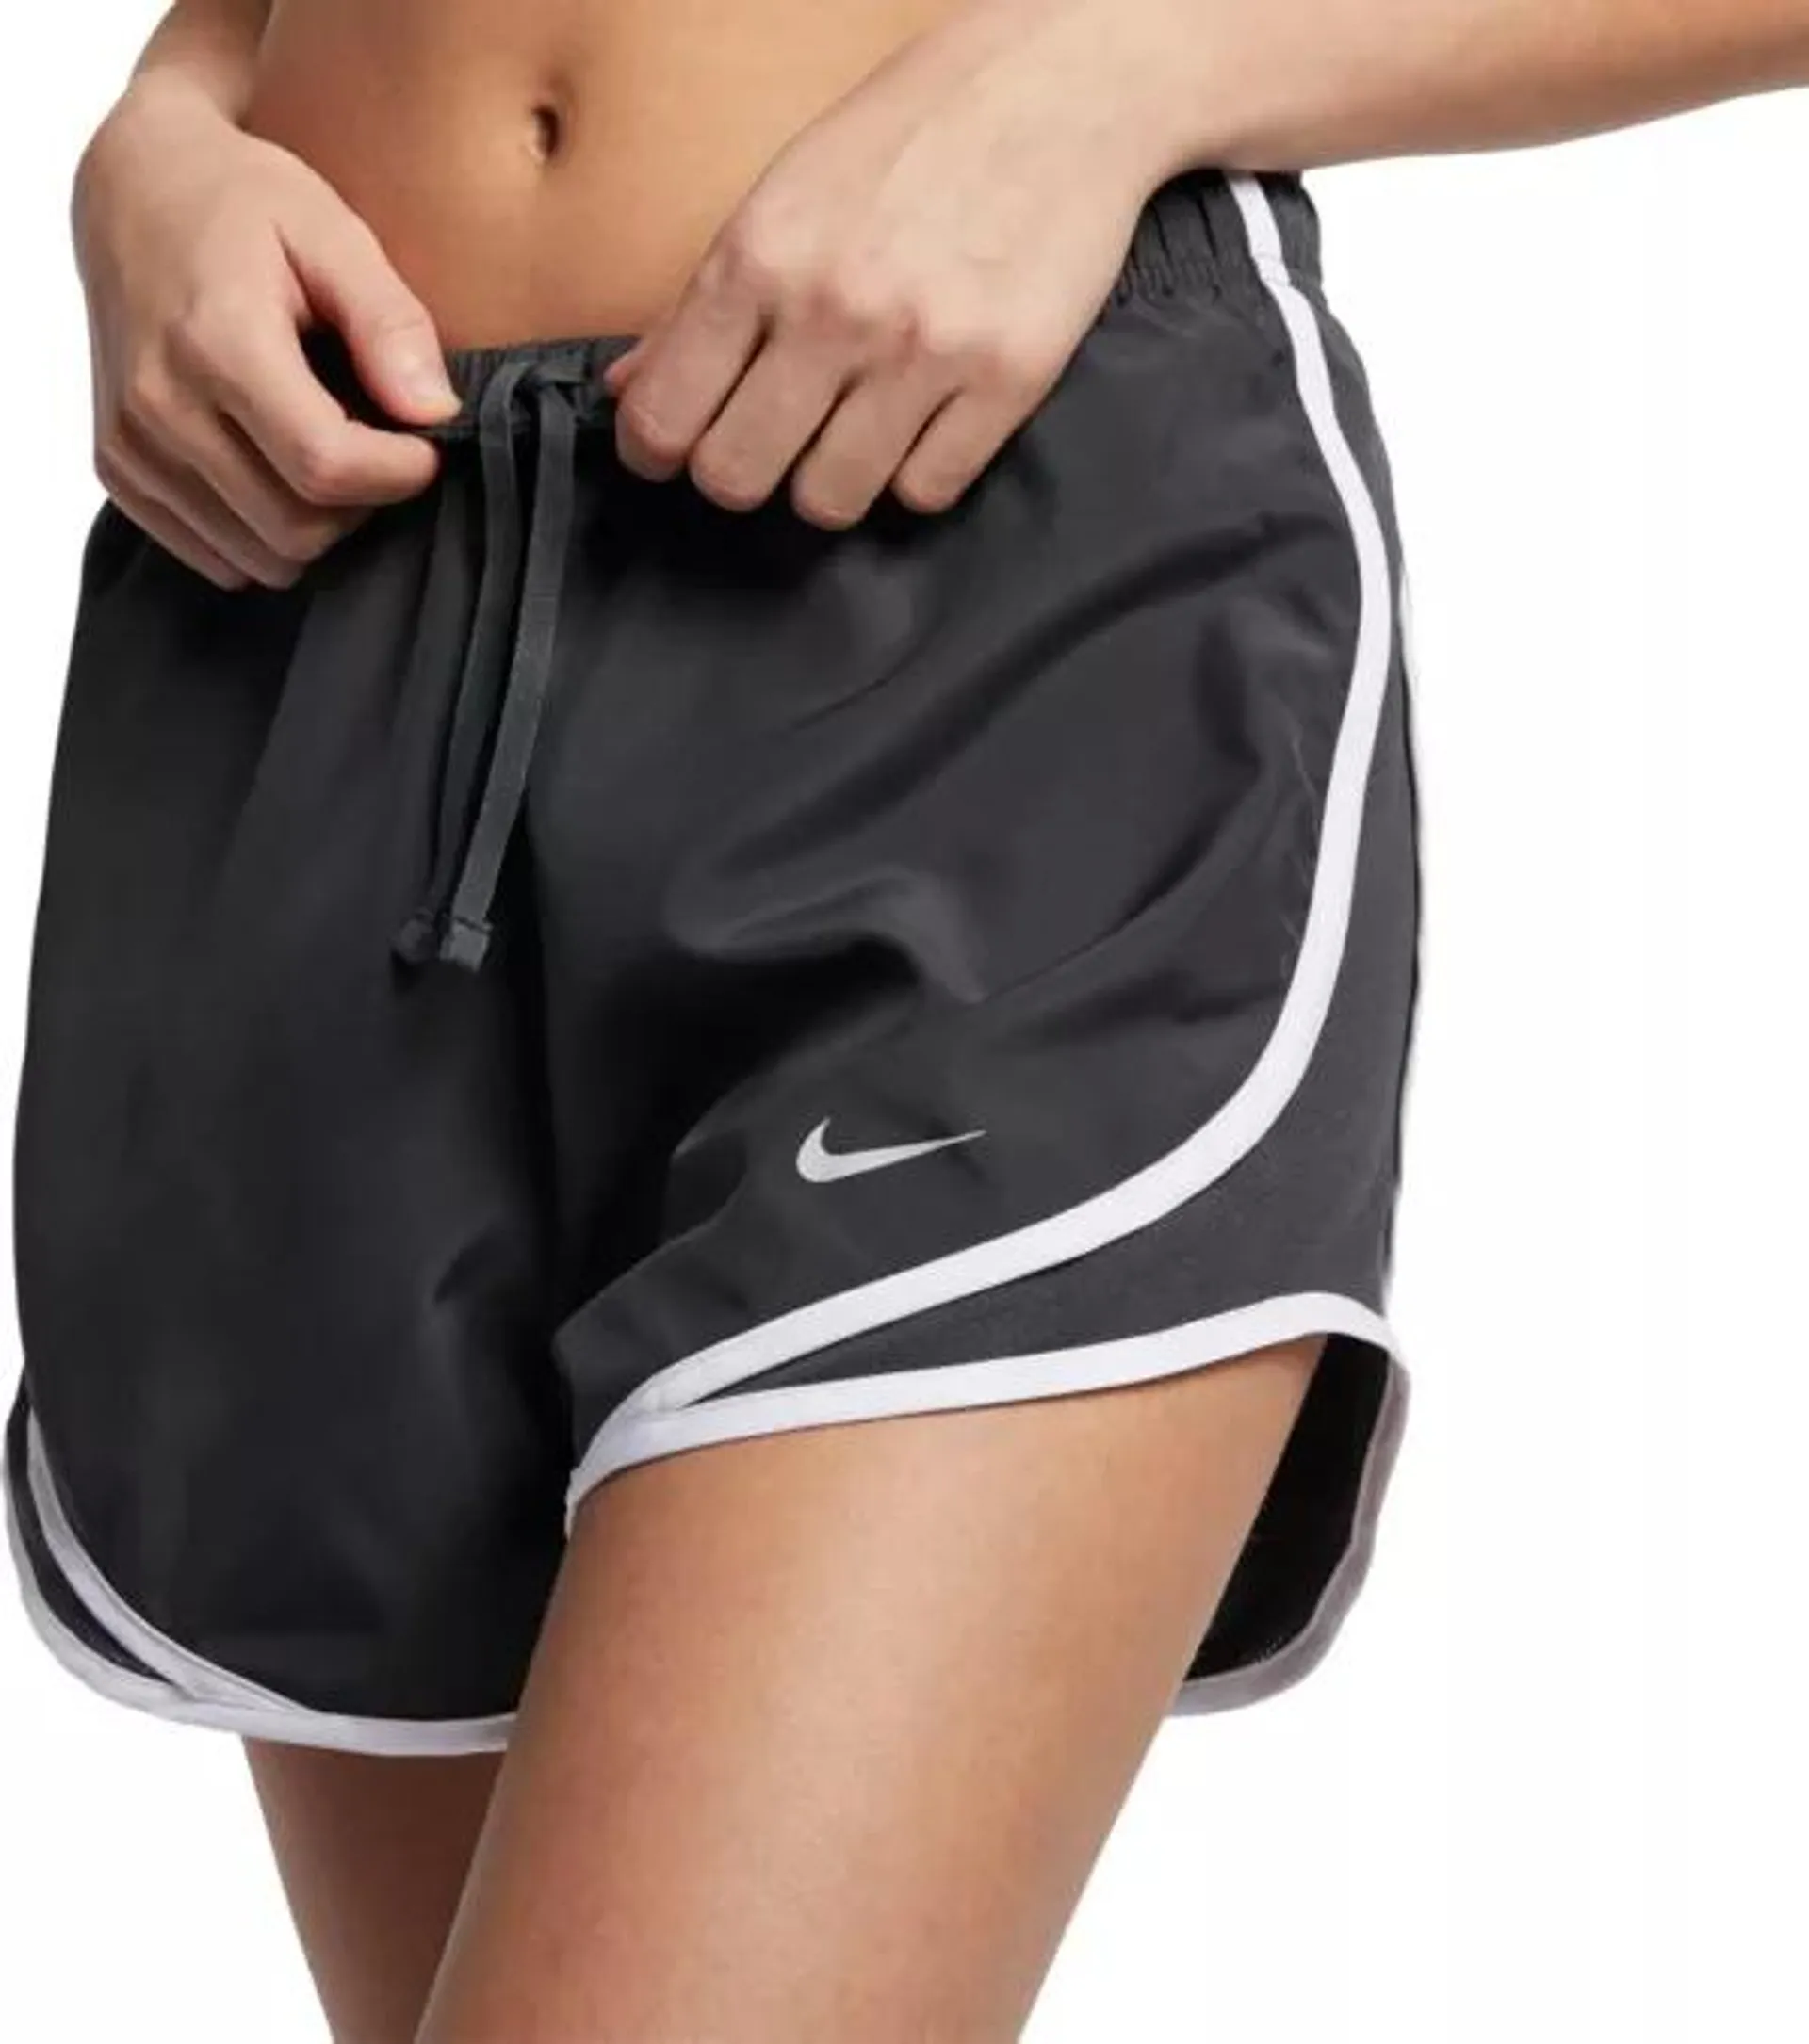 Nike Women's Tempo Running Shorts